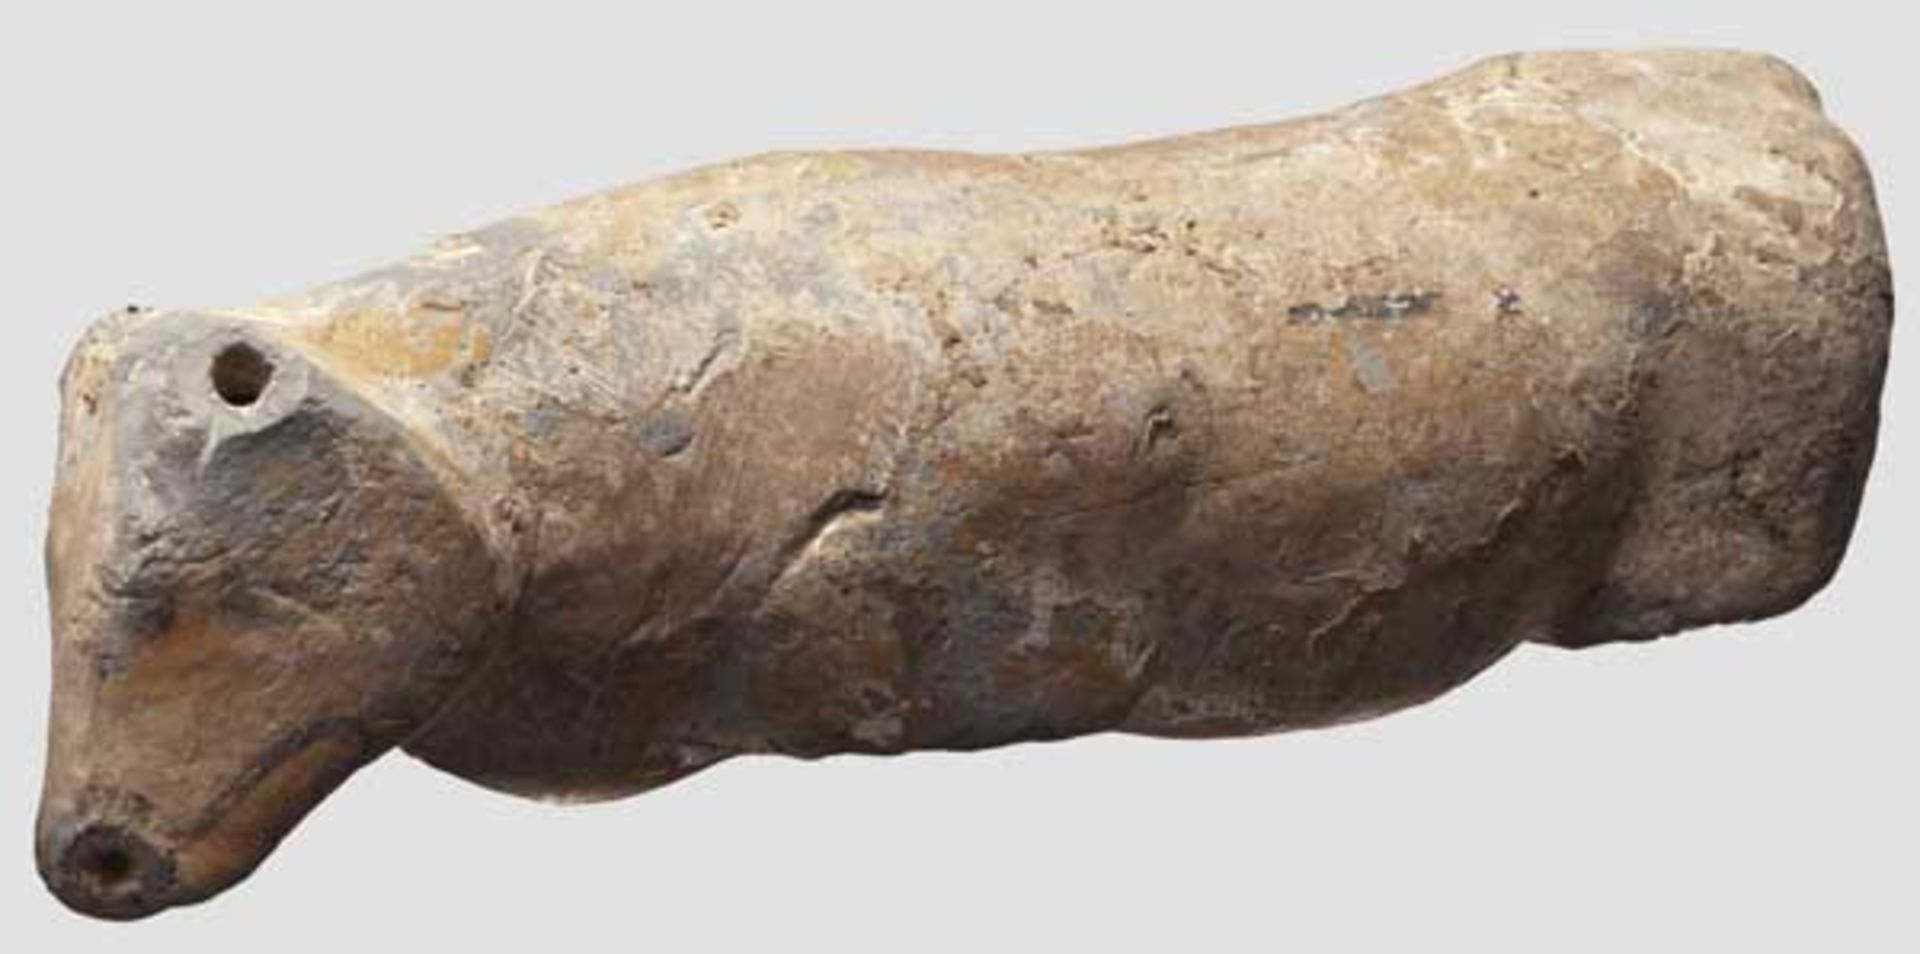 Terrakottakorpus einer Kuh, altägyptisch, Neues Reich, 2. Hälfte 2. Jtsd. v. Chr.   Hohl gearbeitete